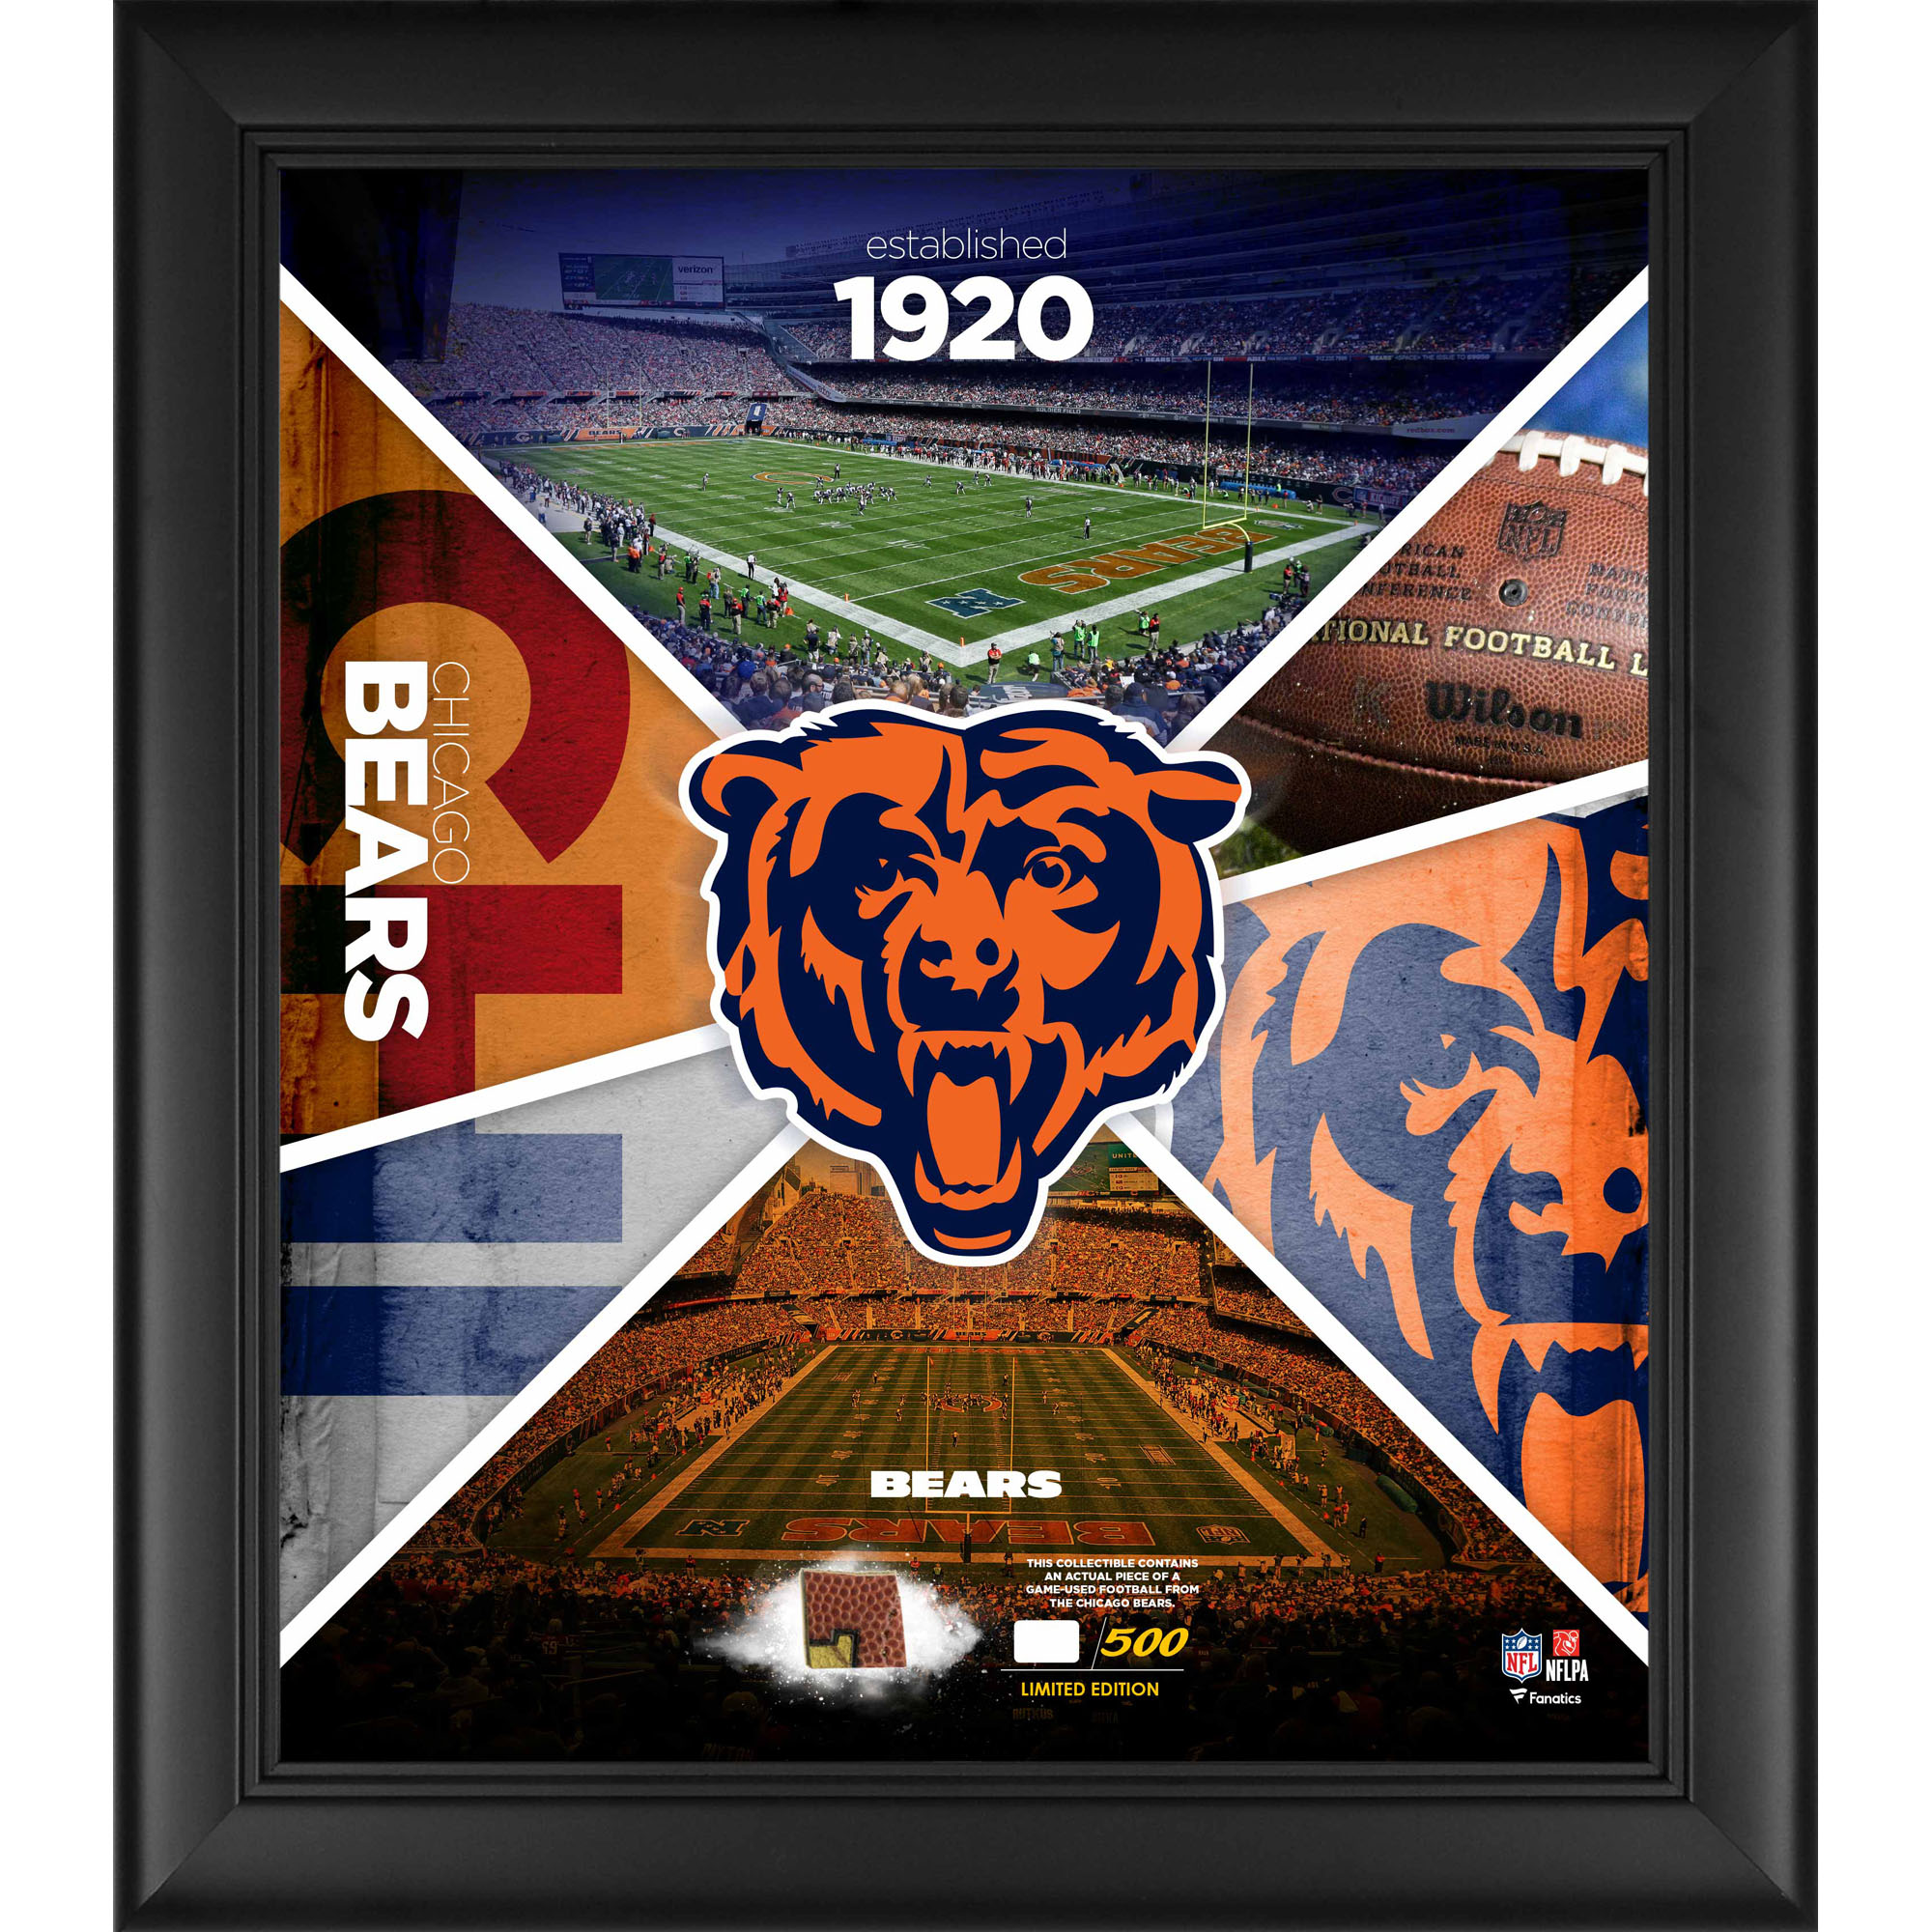 Gerahmte 15 x 17 Zoll große Team Impact Collage der Chicago Bears mit einem Stück eines beim Spiel verwendeten Footballs – limitierte Auflage von 500 Stück